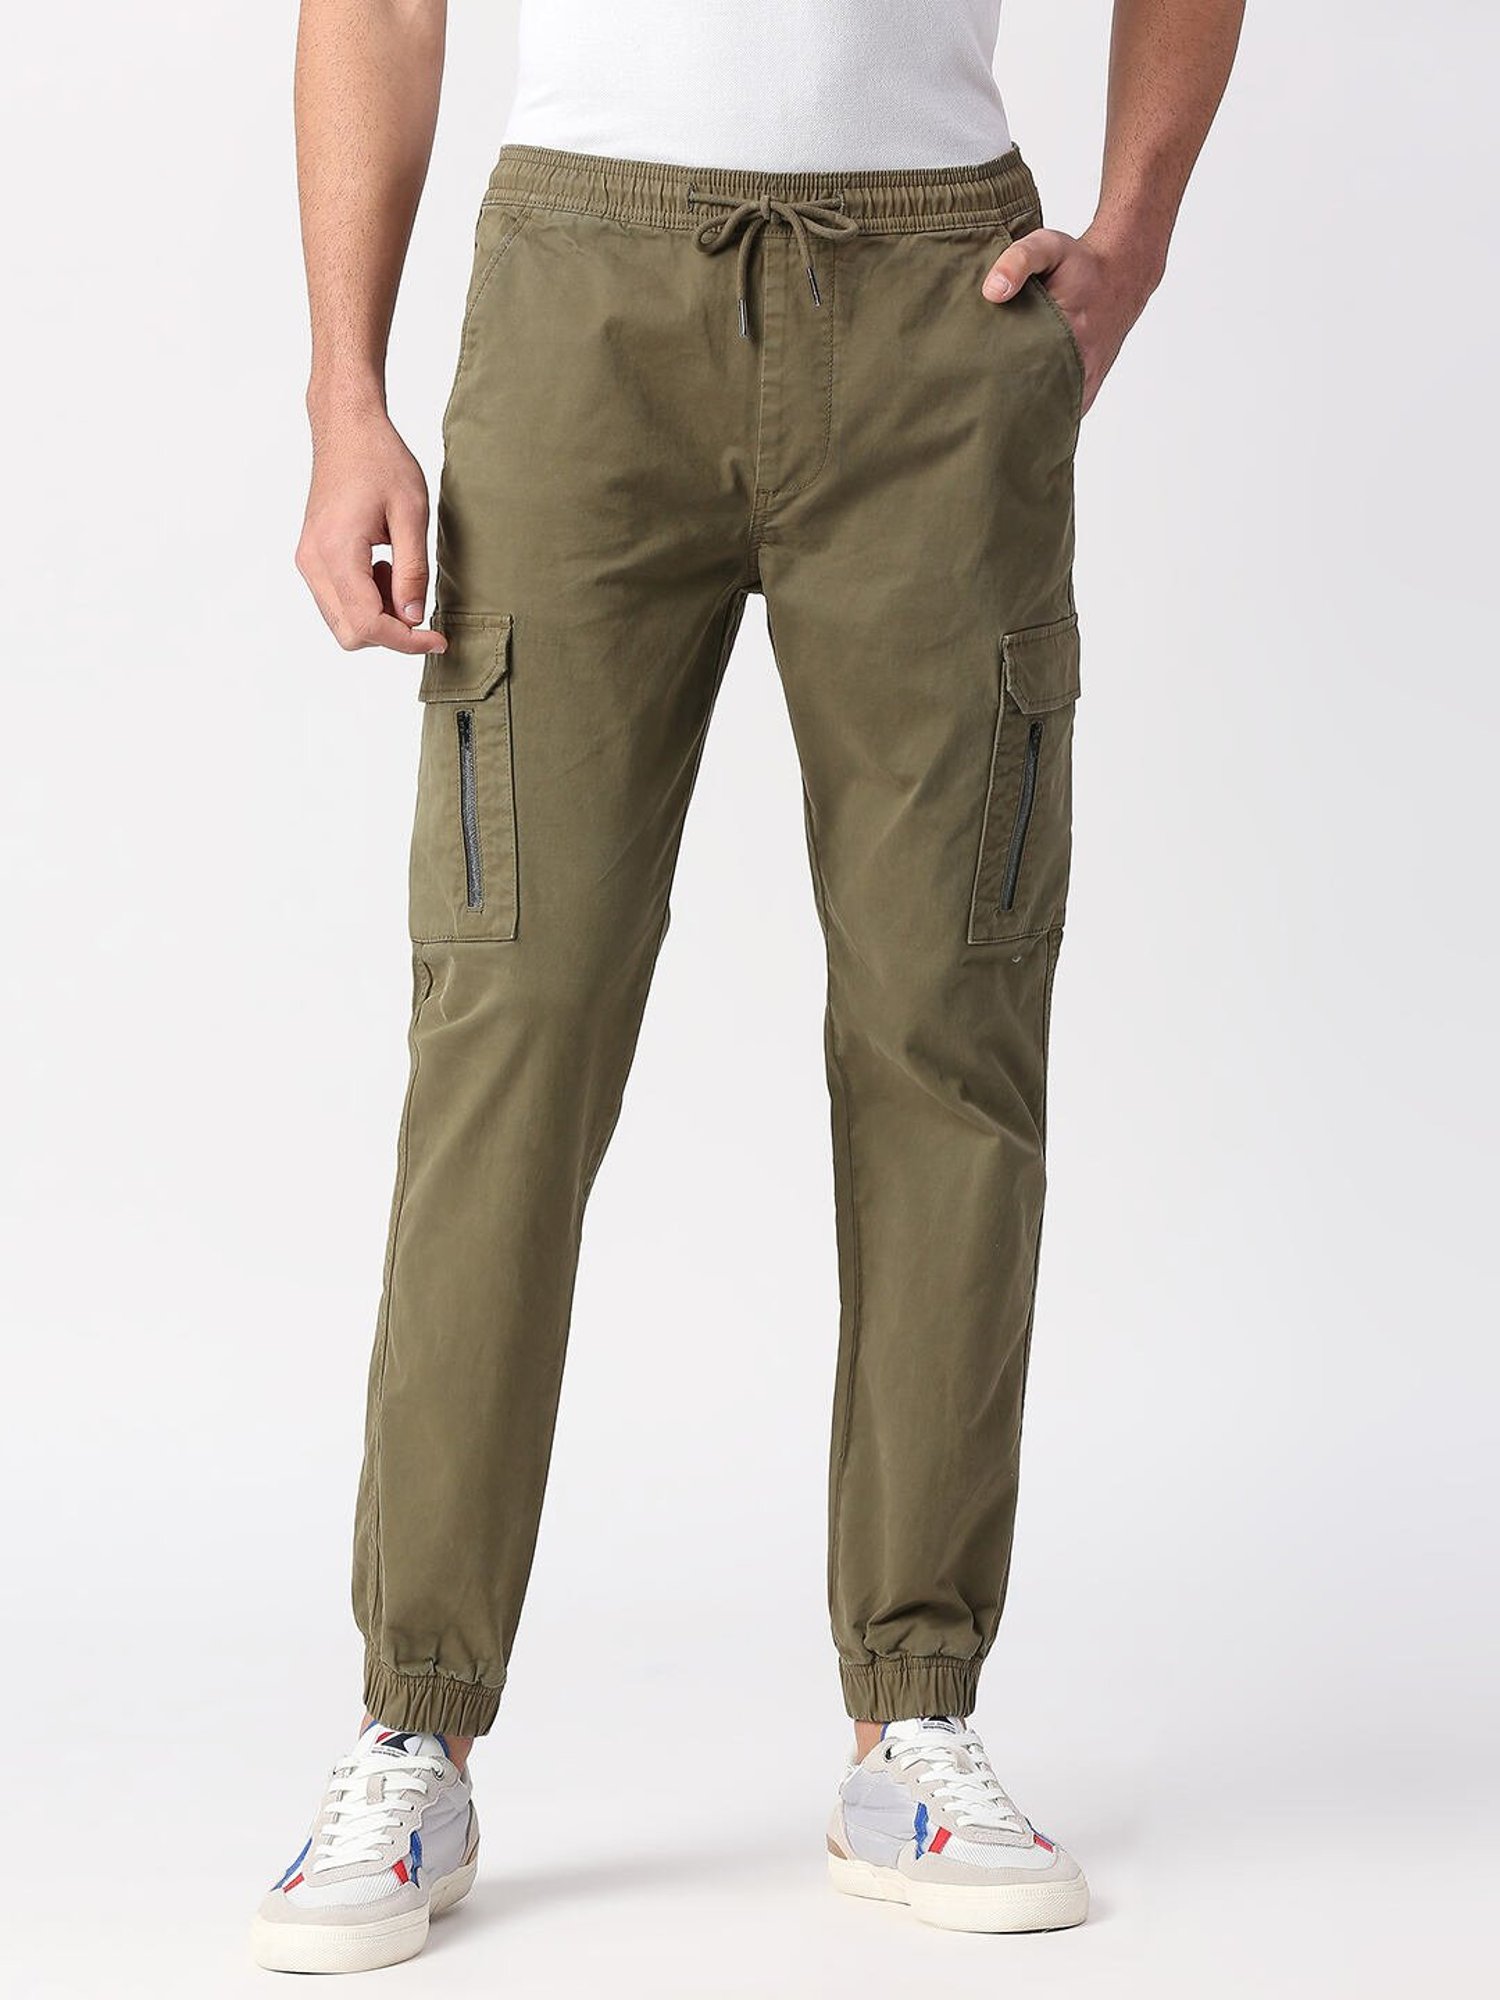 Pepe Jeans Streetwear WideLeg Canvas Cargo Pants Size 32  eBay